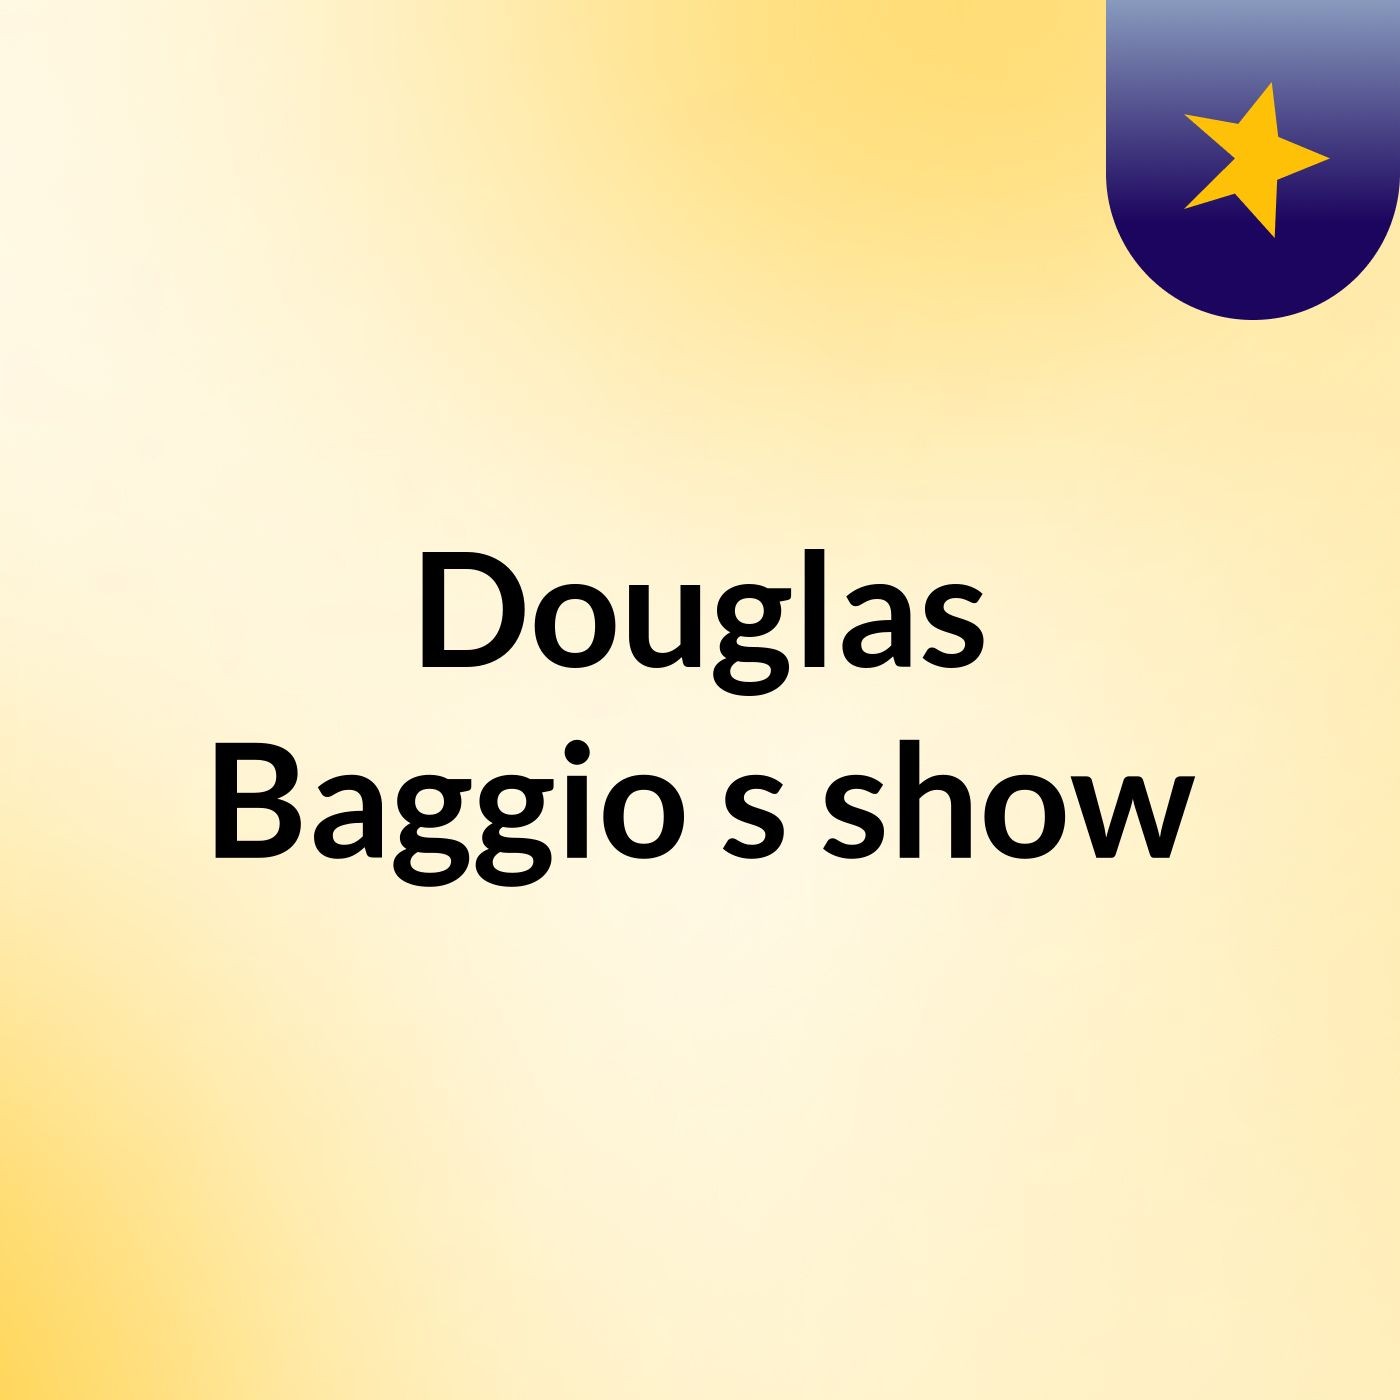 Douglas Baggio's show